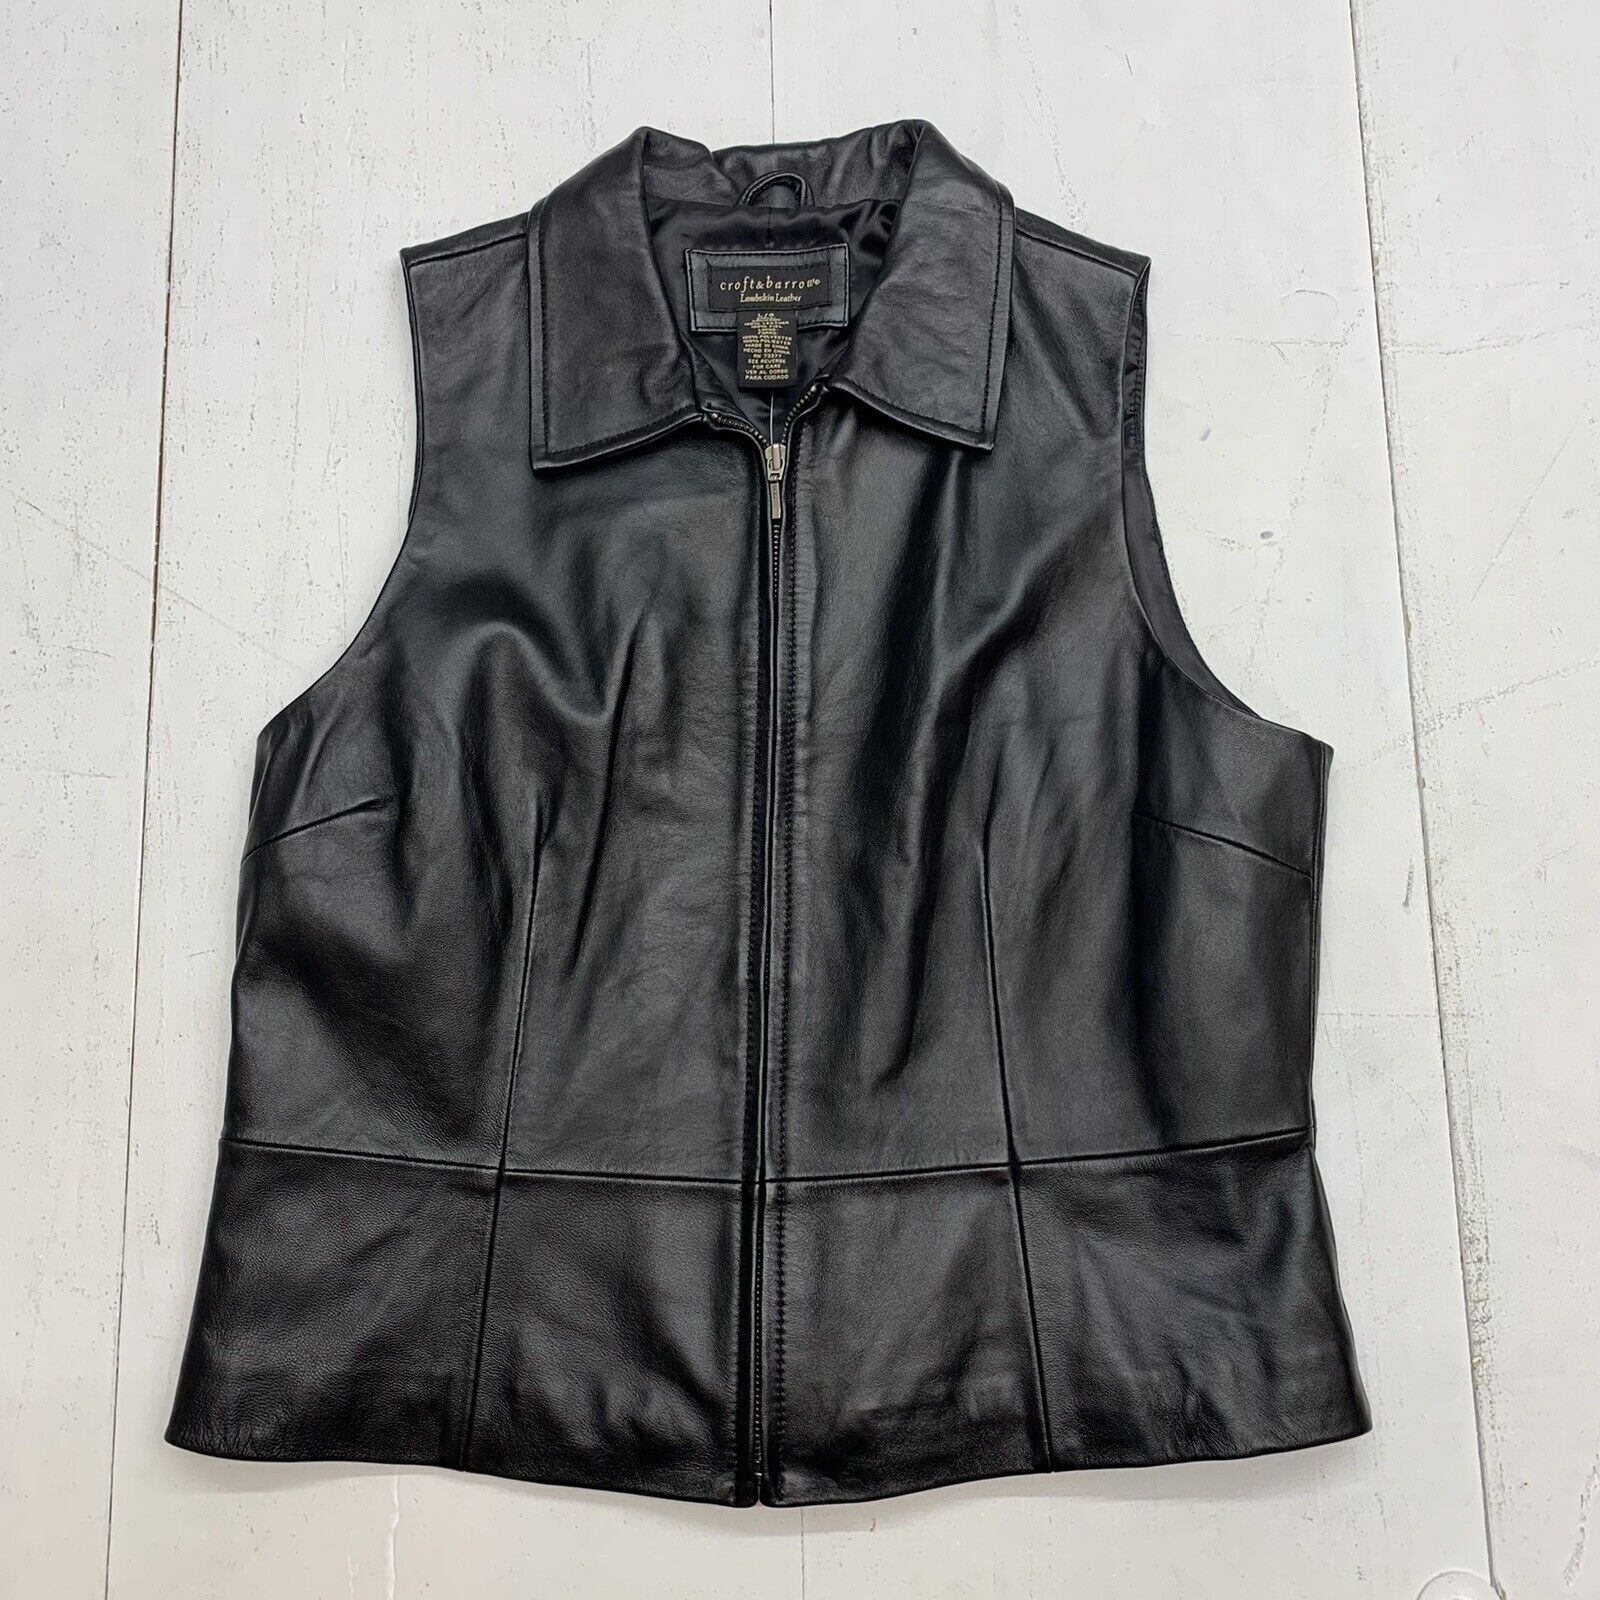 Croft & Barrow Womens Black Leather Sleeveless full zip Jacket size Large